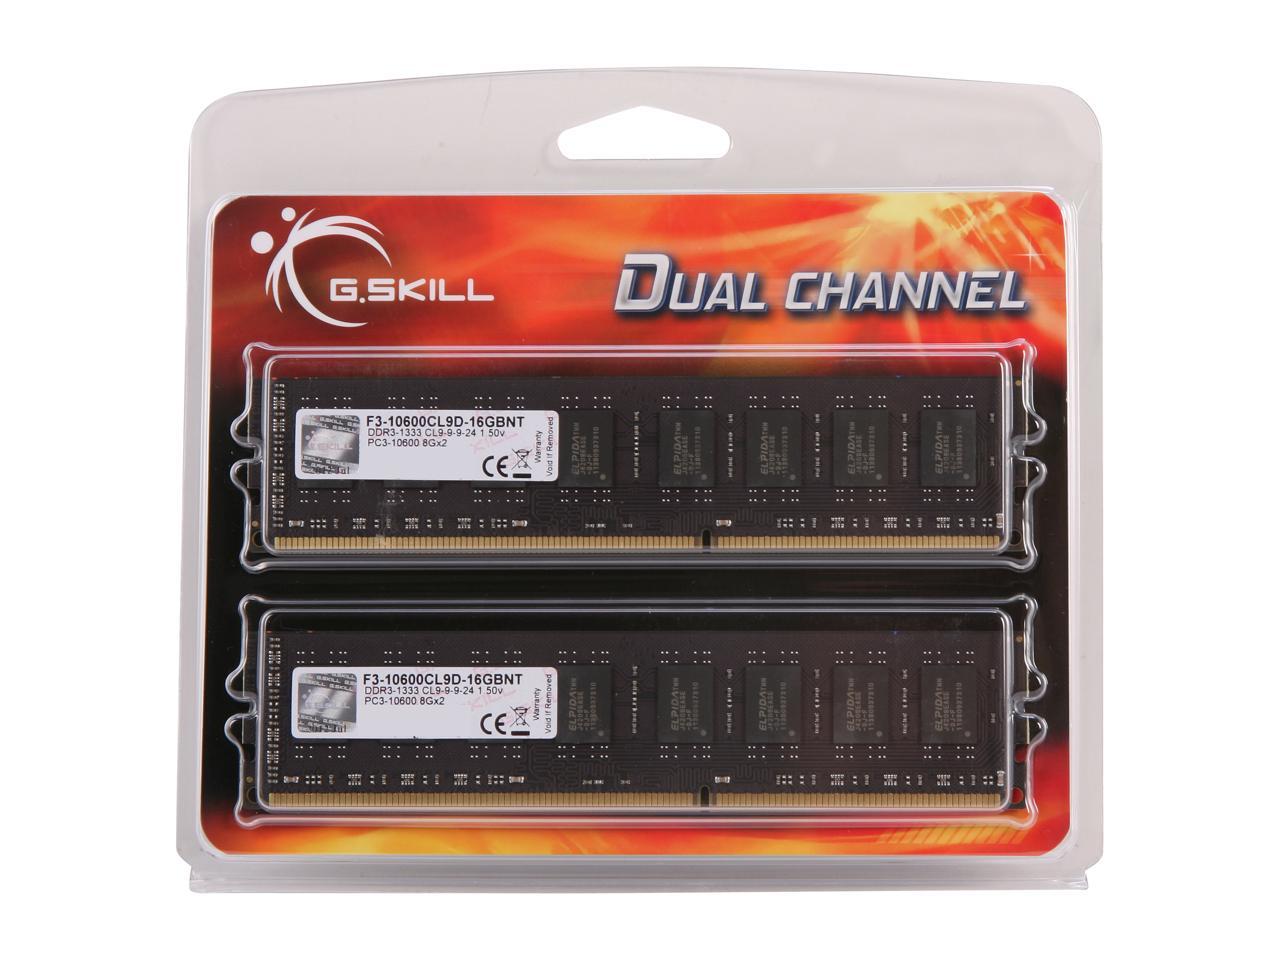 G.SKILL Value Series 16GB (2 x 8GB) 240-Pin DDR3 SDRAM DDR3 1333 (PC3 10600) Desktop Memory Model F3-10600CL9D-16GBNT